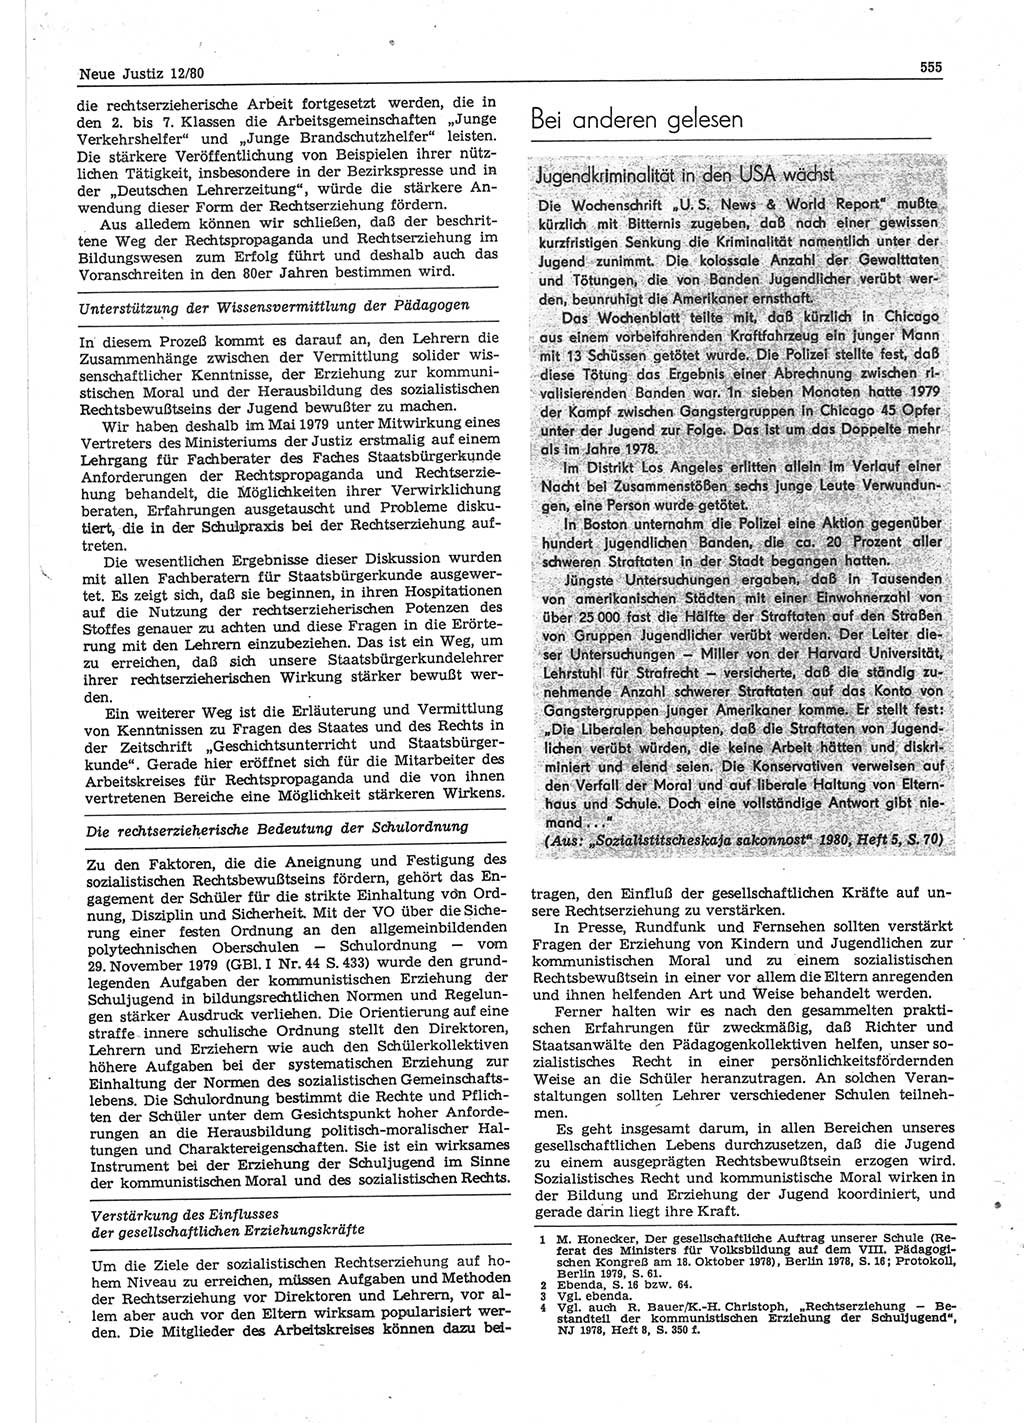 Neue Justiz (NJ), Zeitschrift für sozialistisches Recht und Gesetzlichkeit [Deutsche Demokratische Republik (DDR)], 34. Jahrgang 1980, Seite 555 (NJ DDR 1980, S. 555)